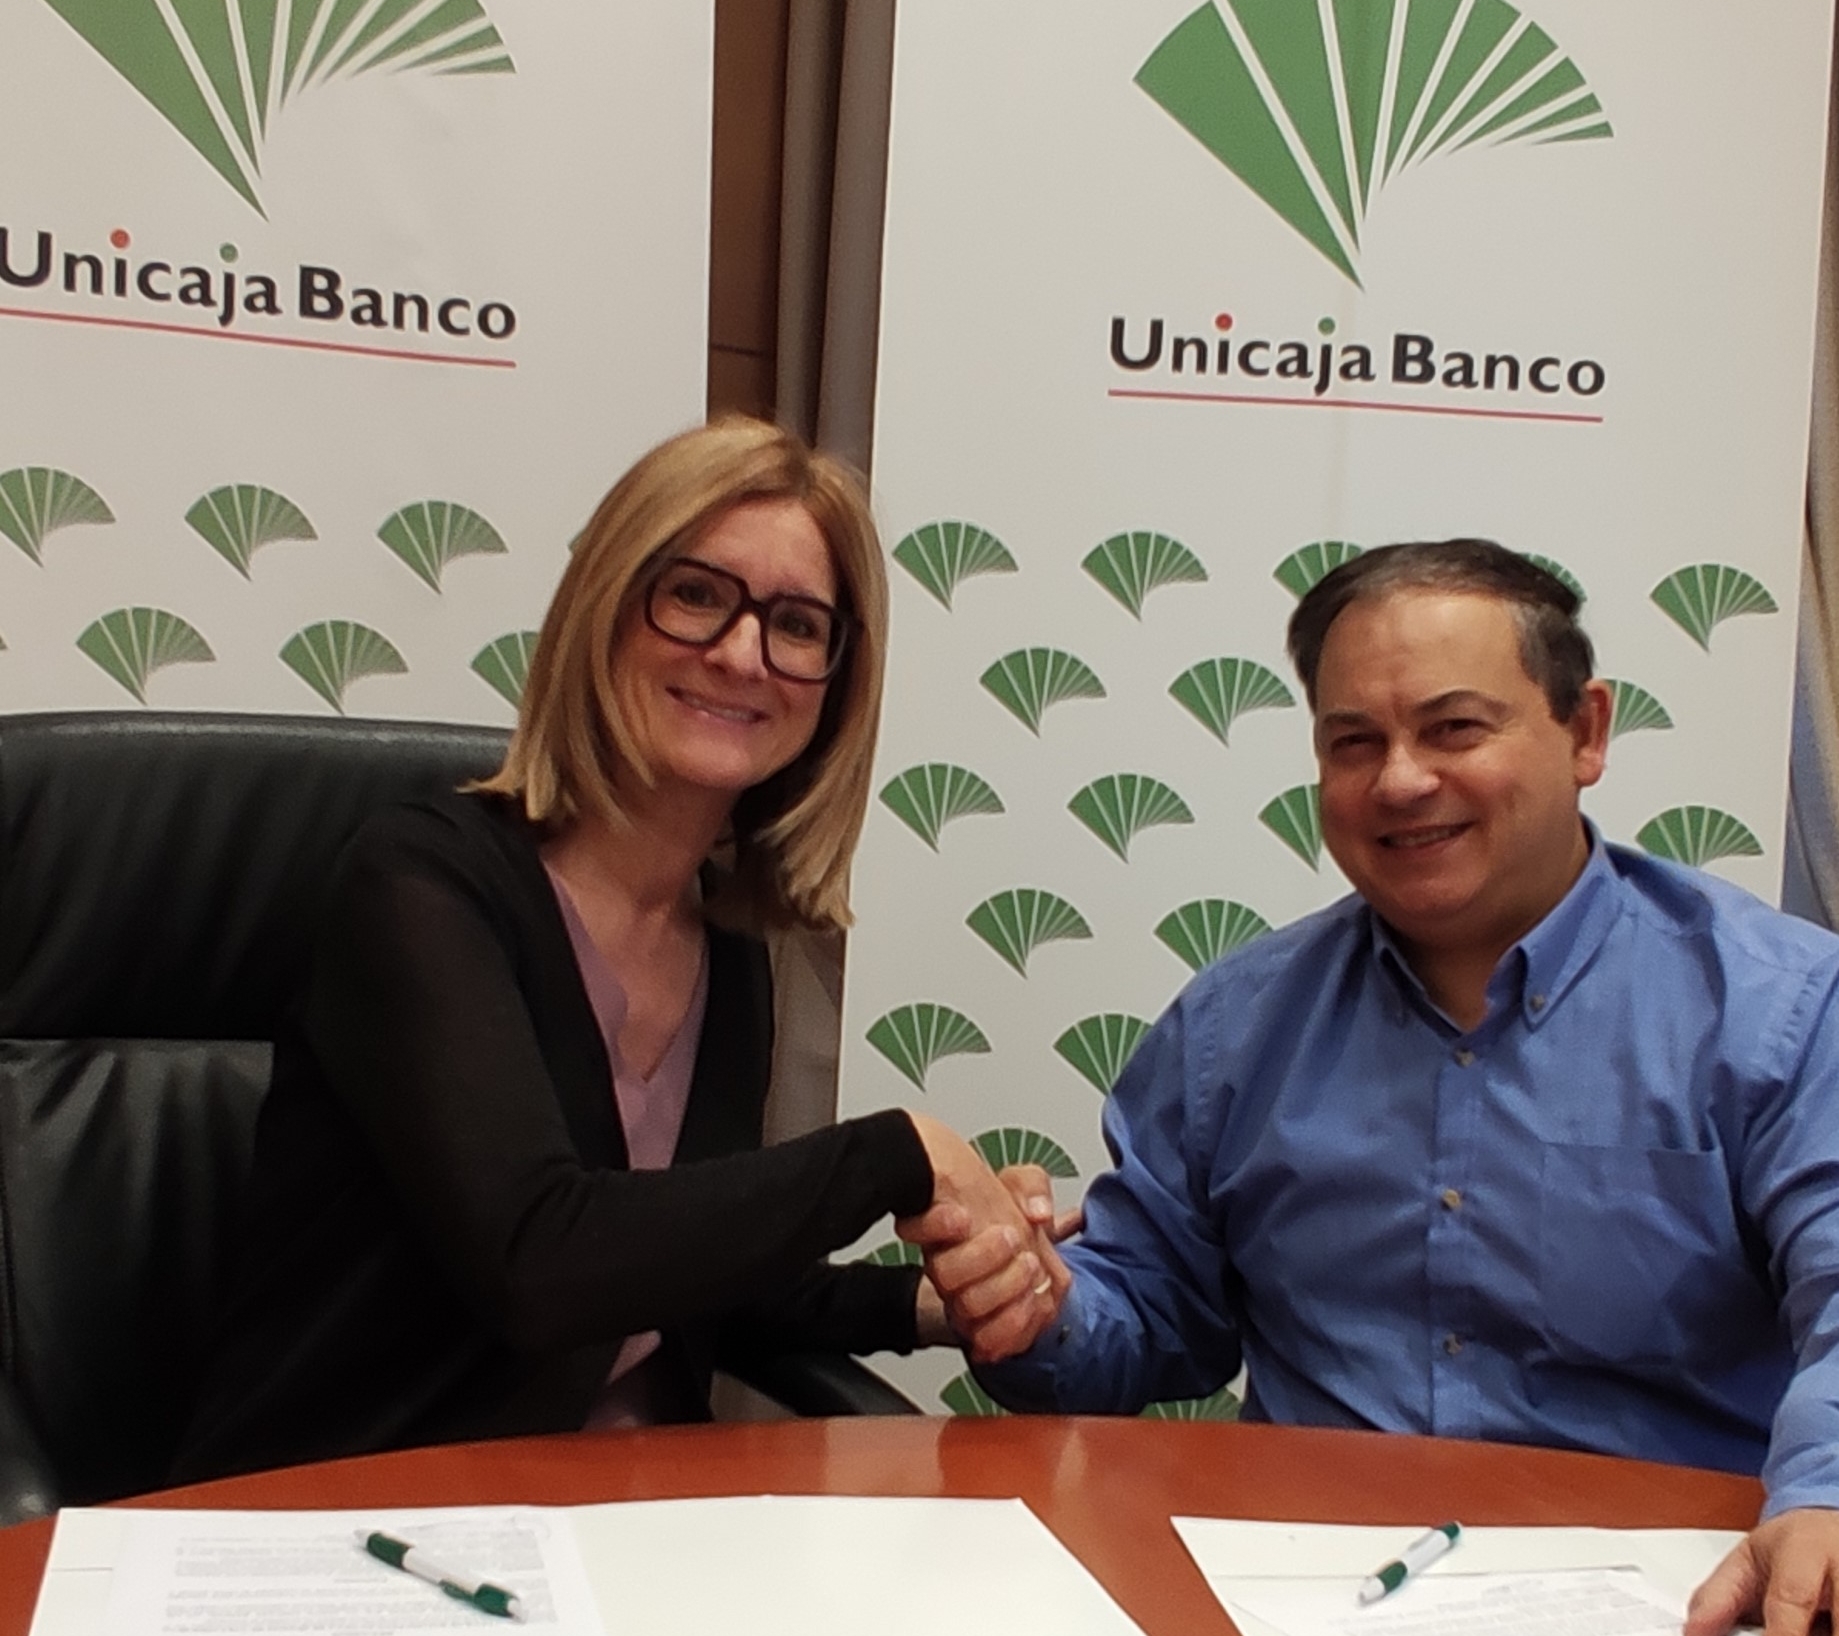 Unicaja Banco renueva su apoyo al Club Baloncesto Silla de Ruedas Valladolid y continúa como patrocinador